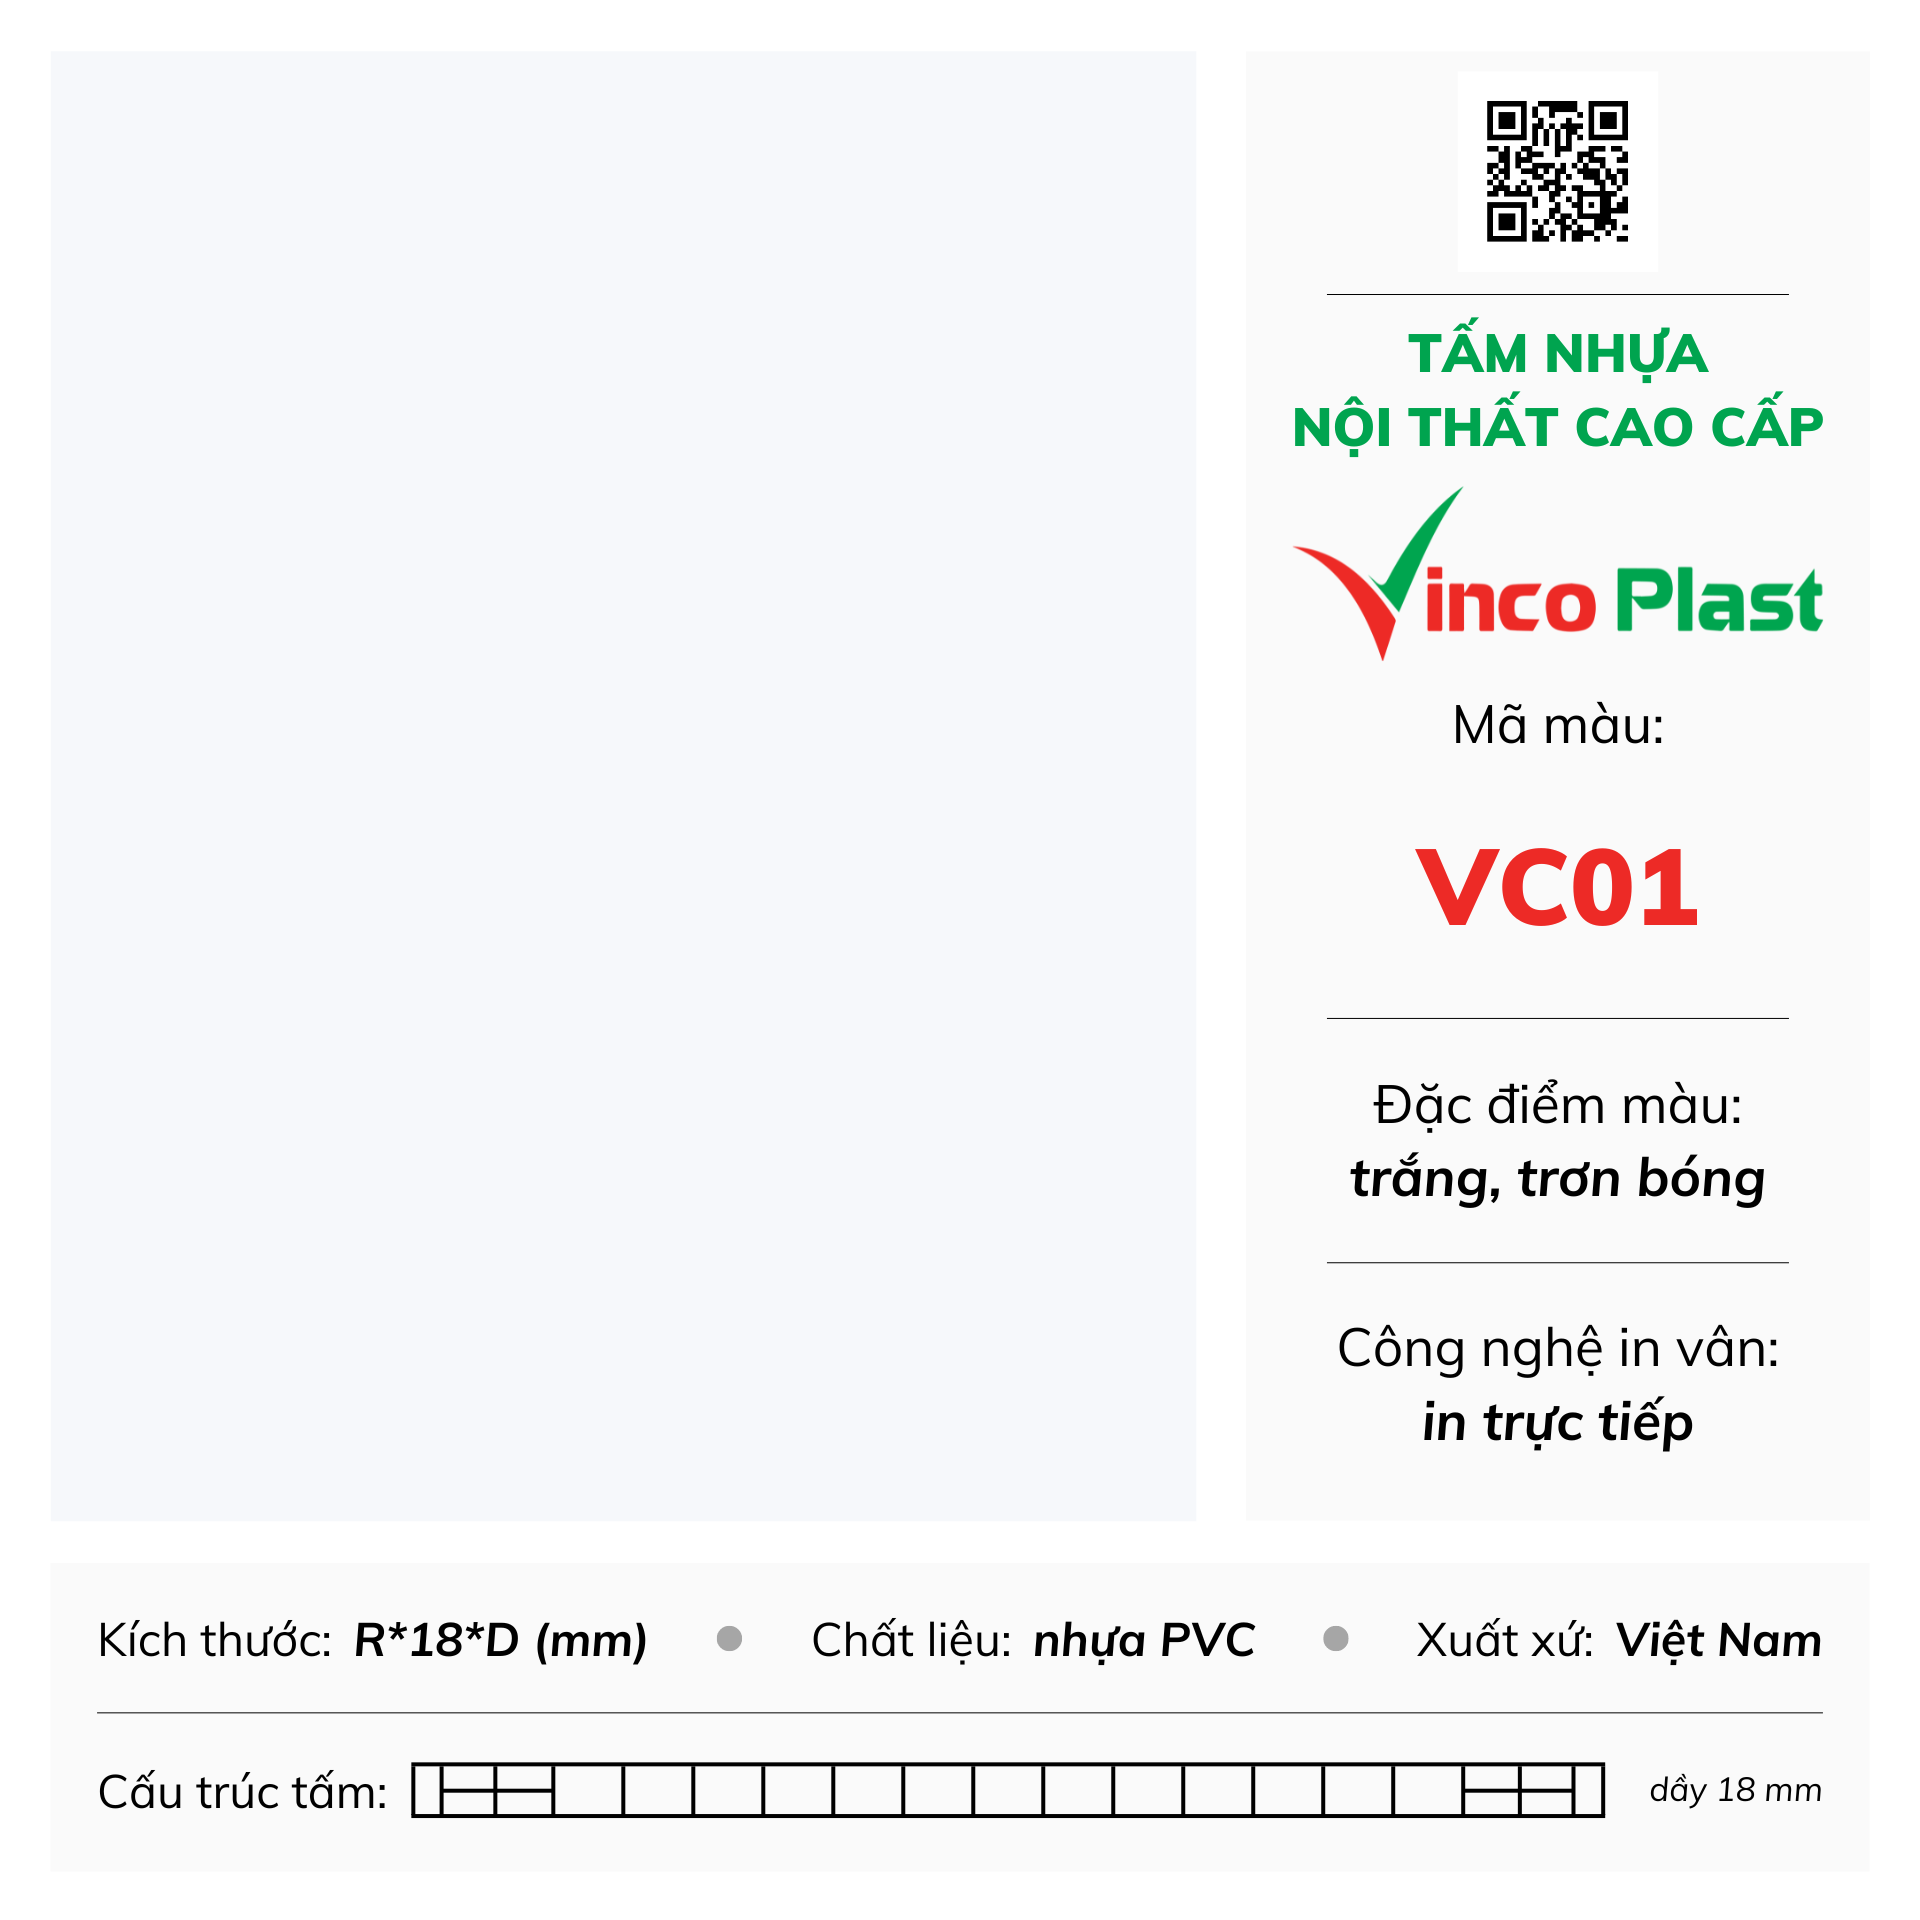 Tấm nhựa nội thất cao cấp Vincoplast màu vc01